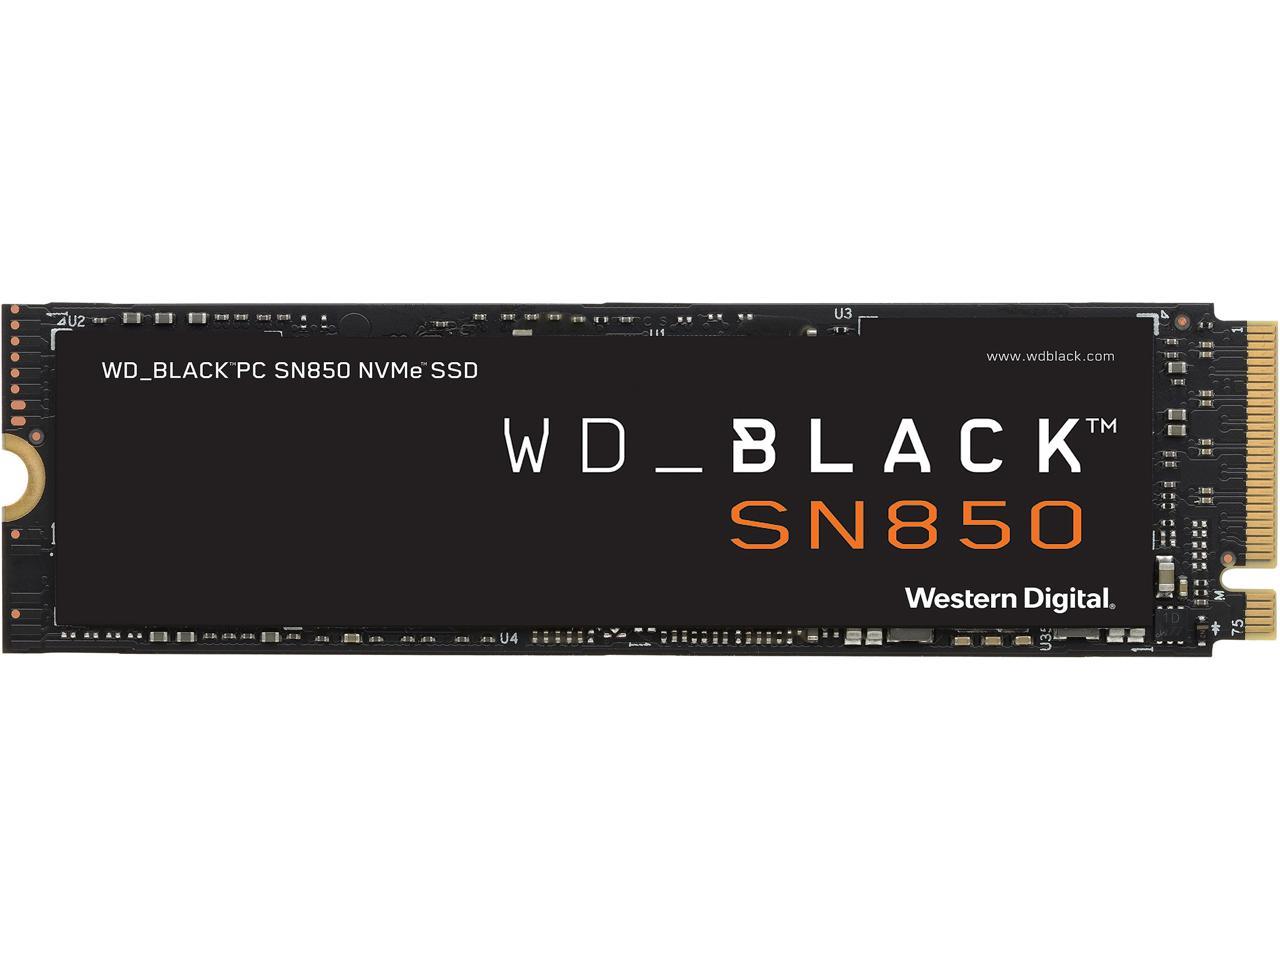 2TB Western Digital WD BLACK SN850 NVMe Gen 4 SSD $265